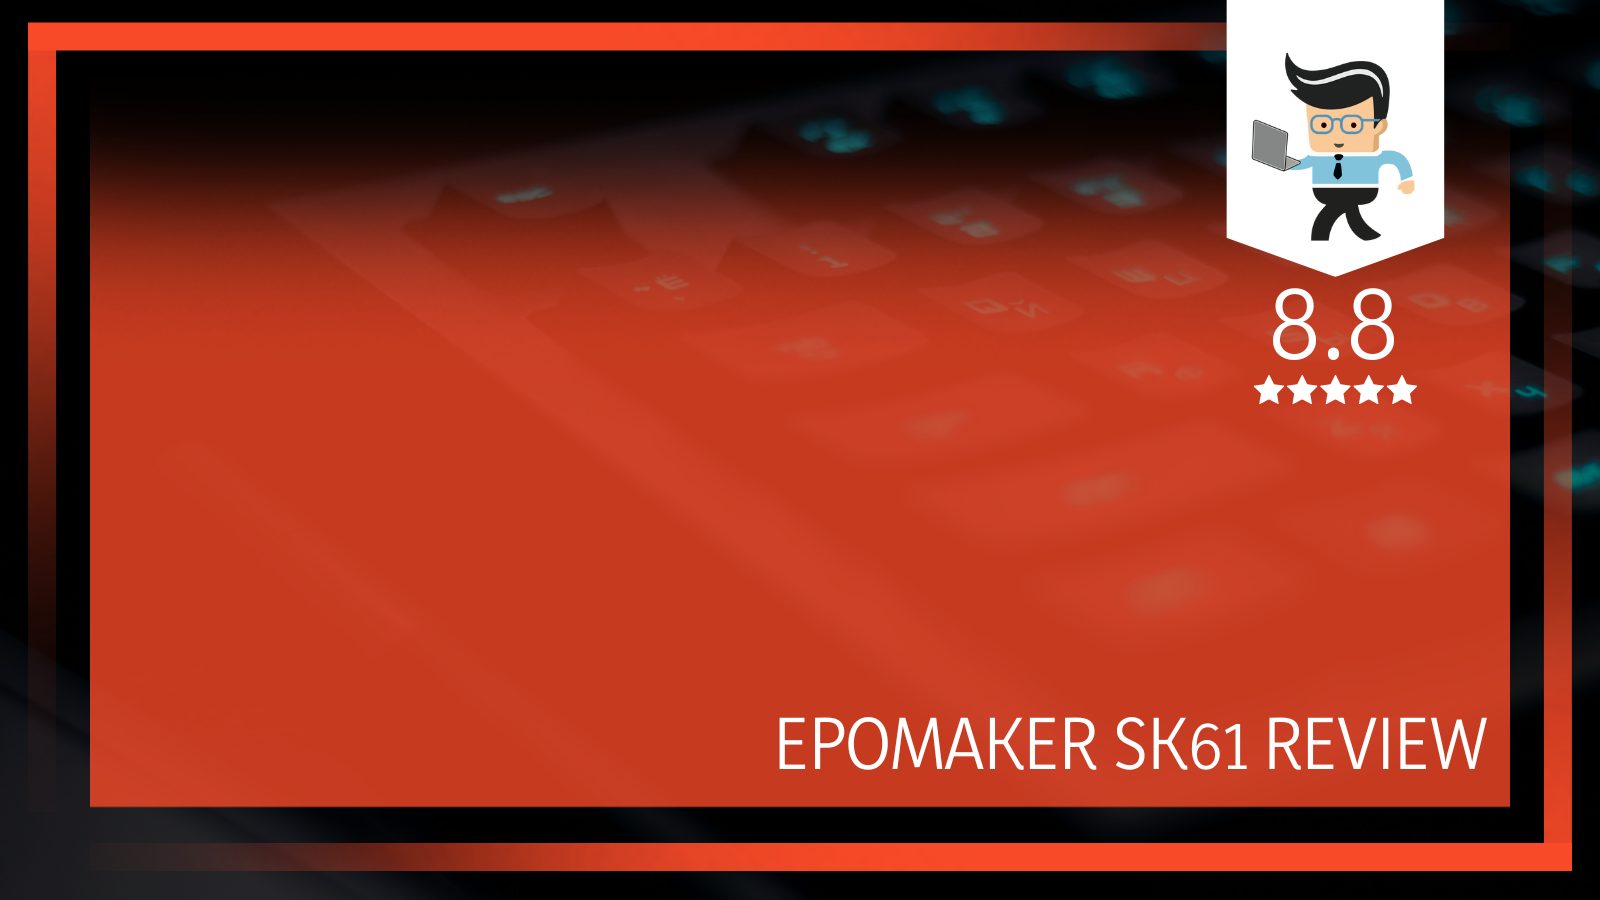 Epomaker SK61 Review